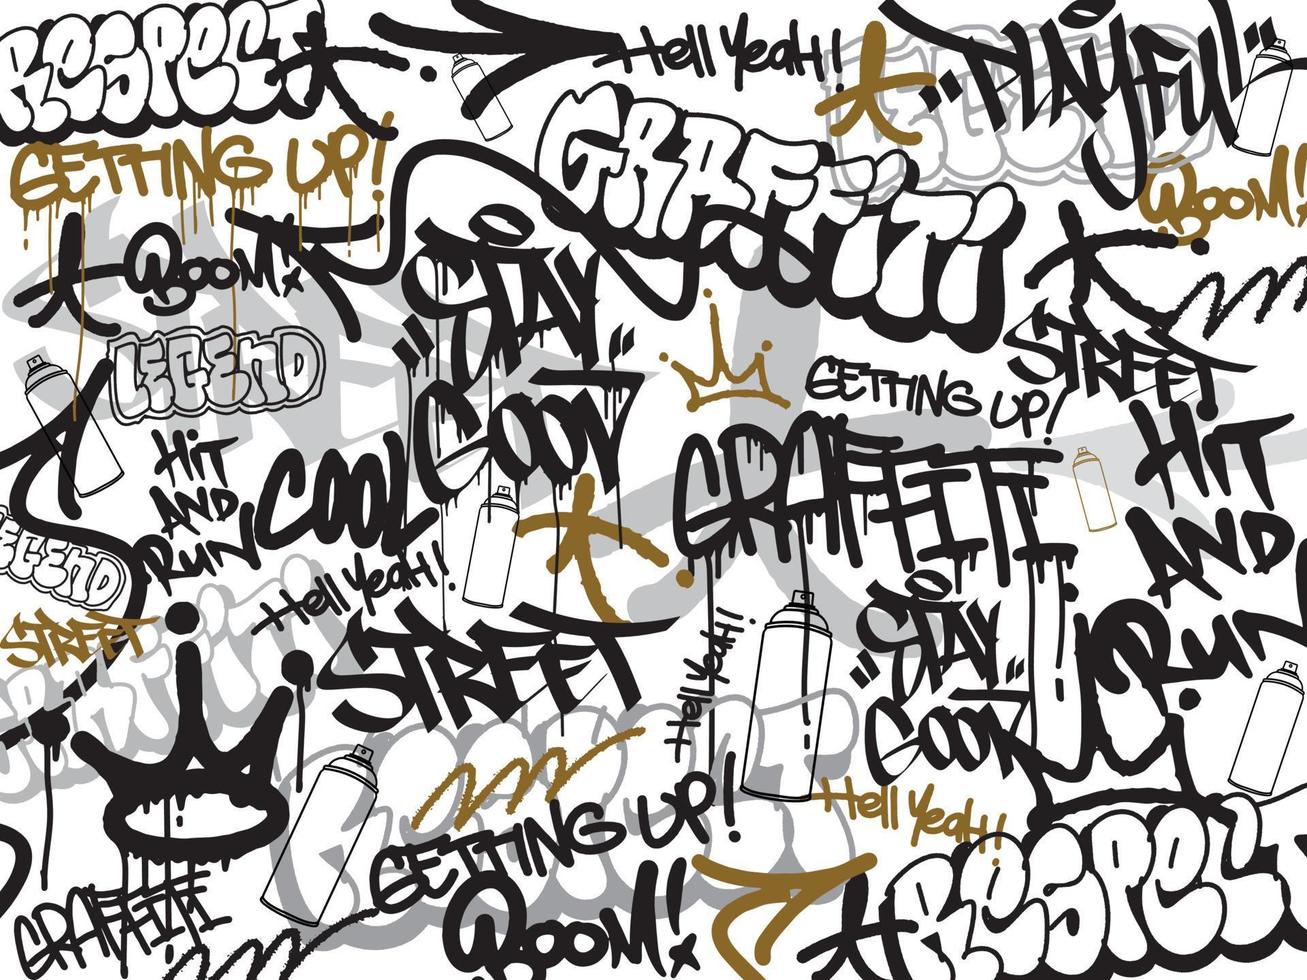 vektor illustration av graffiti bakgrund. sömlös graffiti konst texturer i en ritad för hand stil. gammal skola och urban gata konst tema för t-shirt design, textil, bakgrund, tapet, och grafik